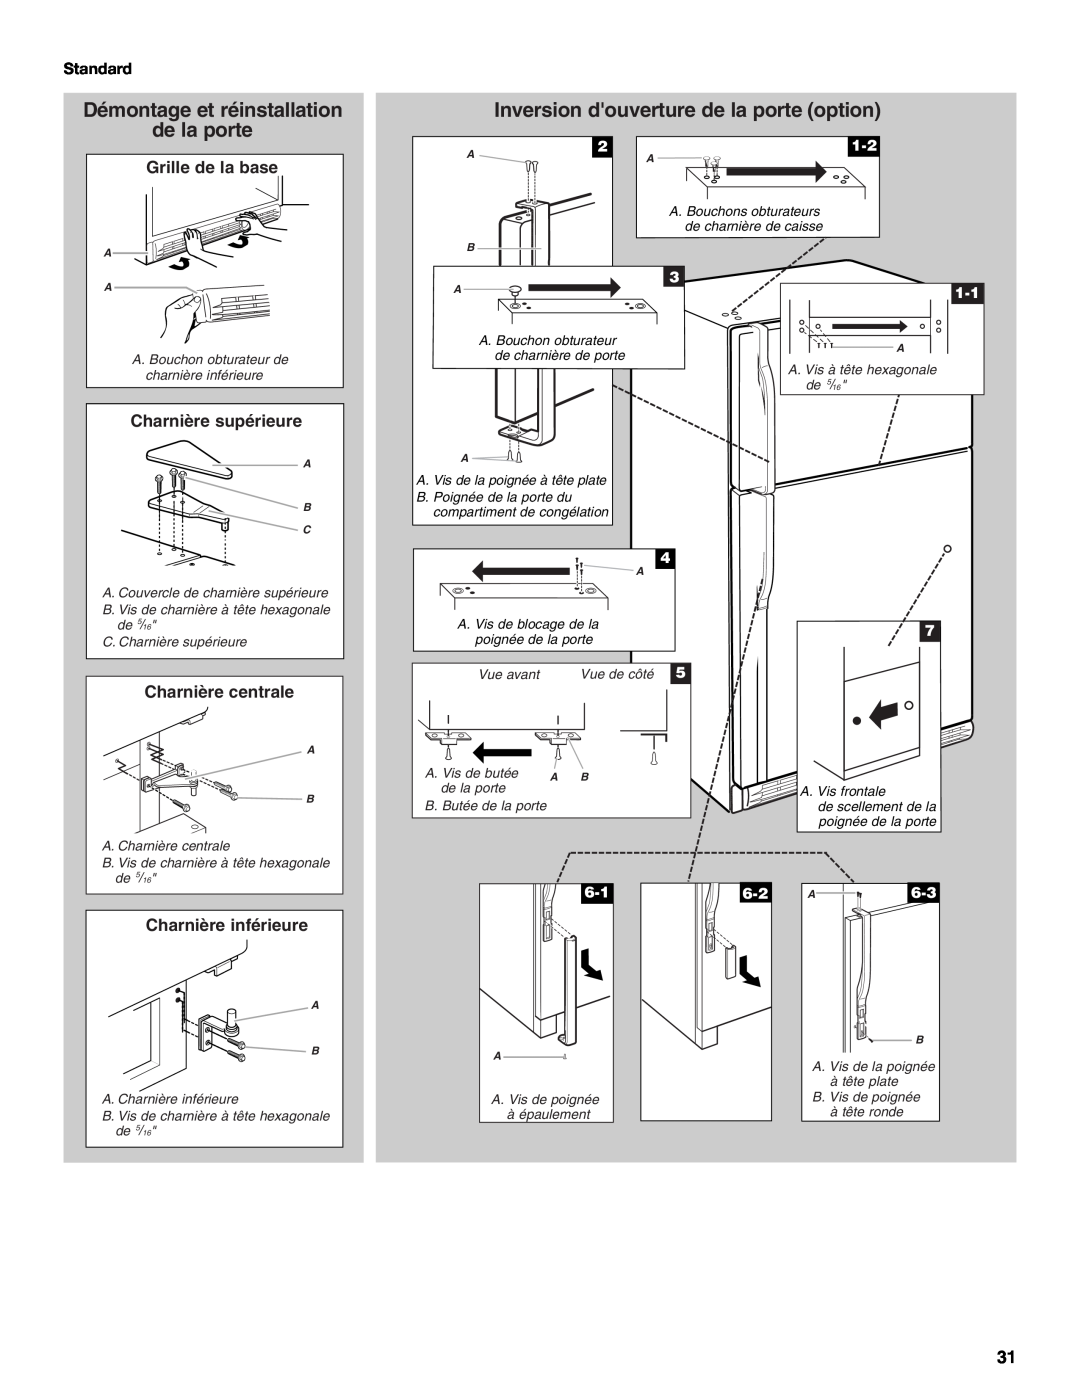 KitchenAid TOP-MOUNT REFRIGERATOR manual Démontage et réinstallation de la porte, Inversion douverture de la porte option 